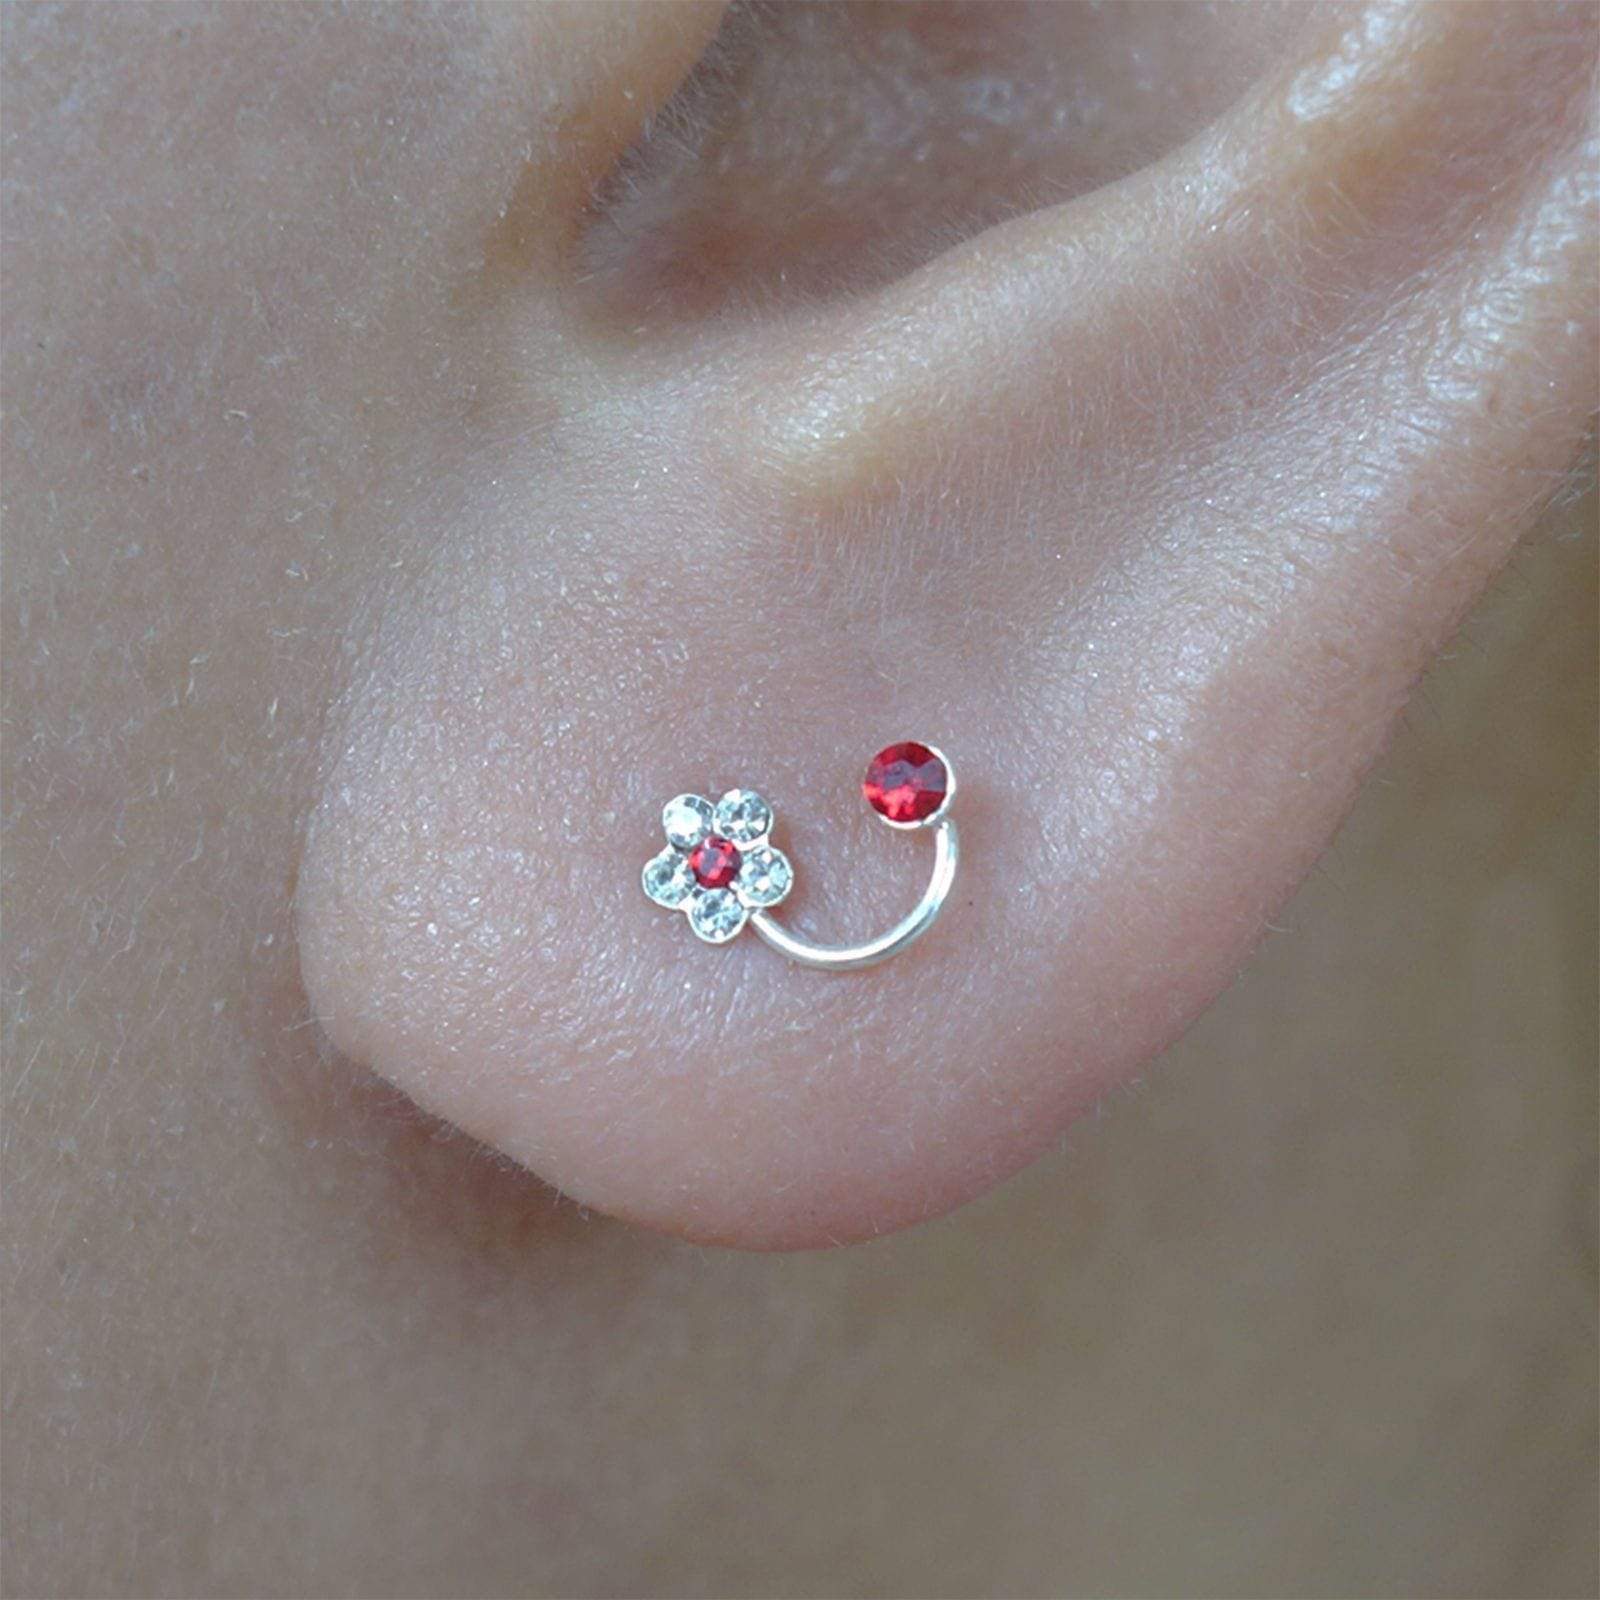 Pair of 925 Sterling Silver Flower Stud Earrings Red Crystal Ear Studs Jewellery Pair of 925 Sterling Silver Flower Stud Earrings Red Crystal Ear Studs Jewellery